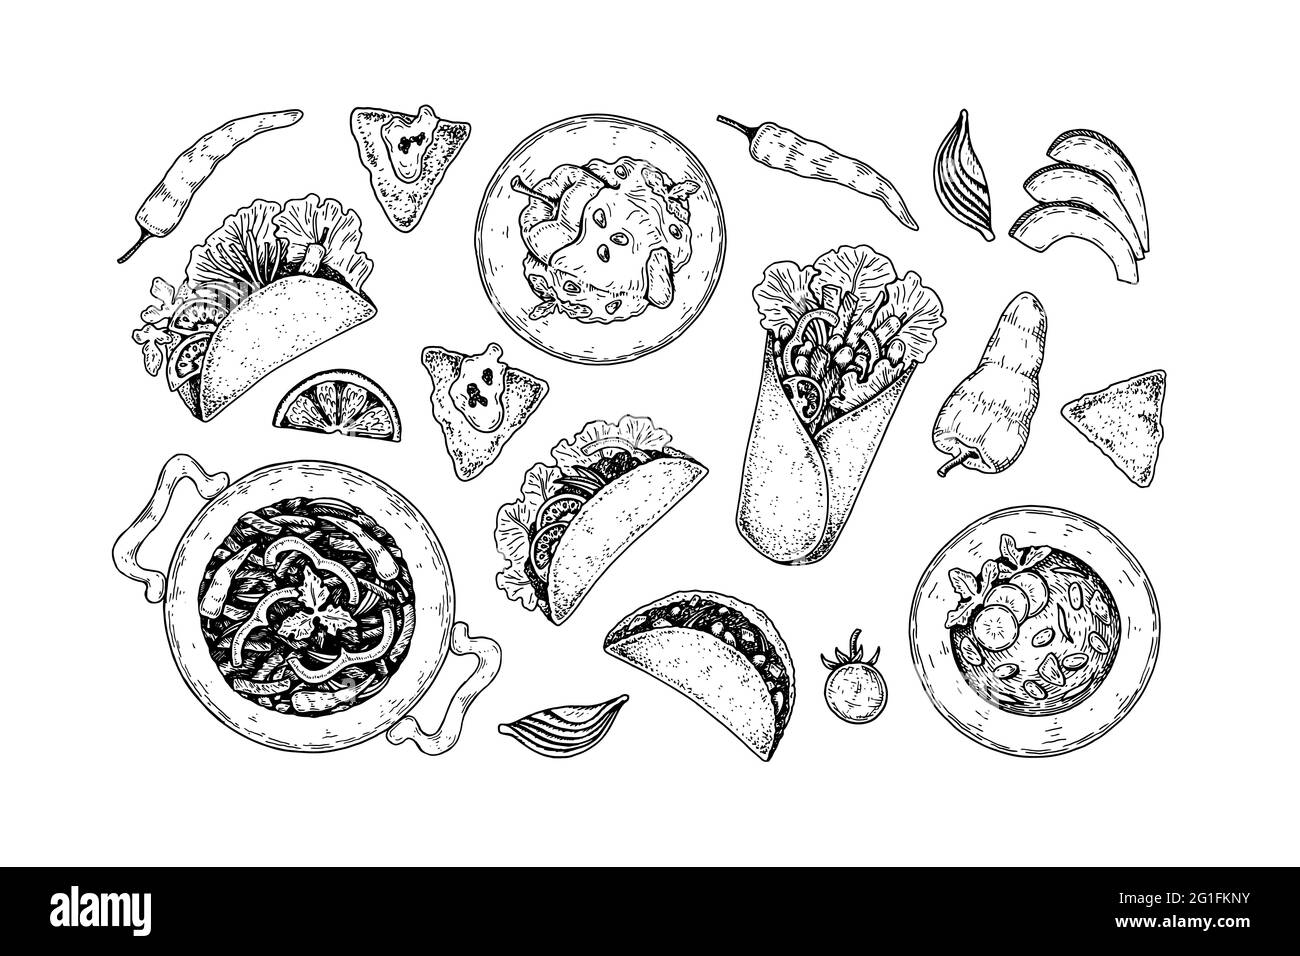 Ensemble de plats mexicains dessinés à la main. Illustration vectorielle dans le style d'esquisse Illustration de Vecteur